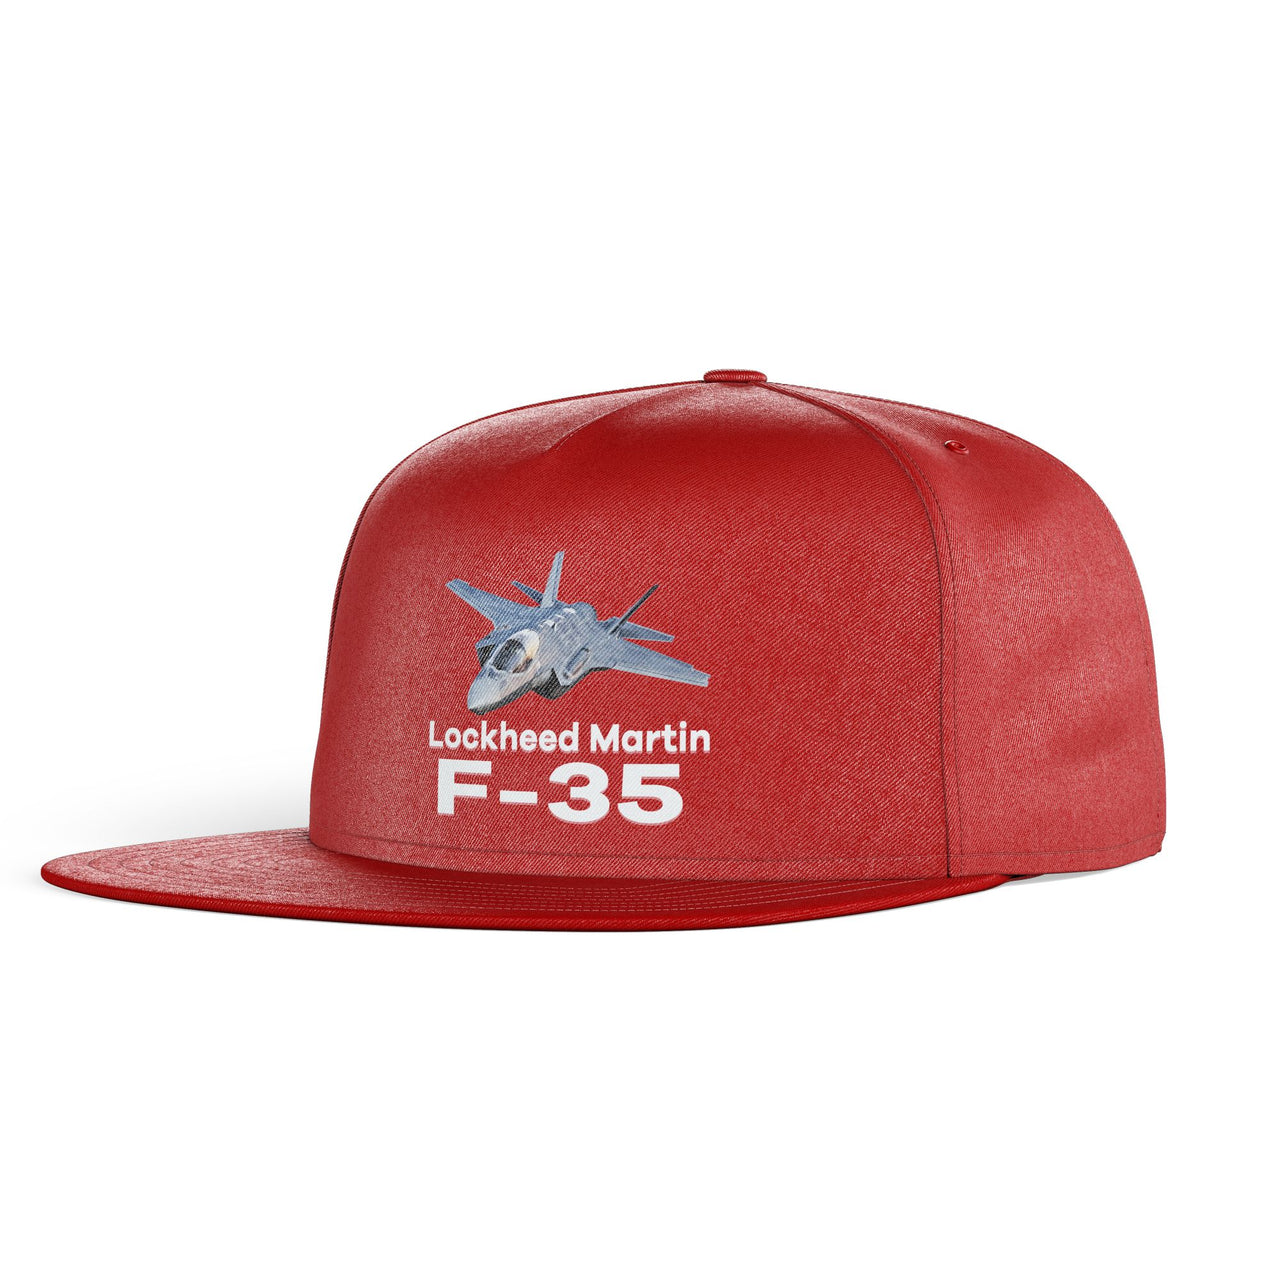 The Lockheed Martin F35 Designed Snapback Caps & Hats